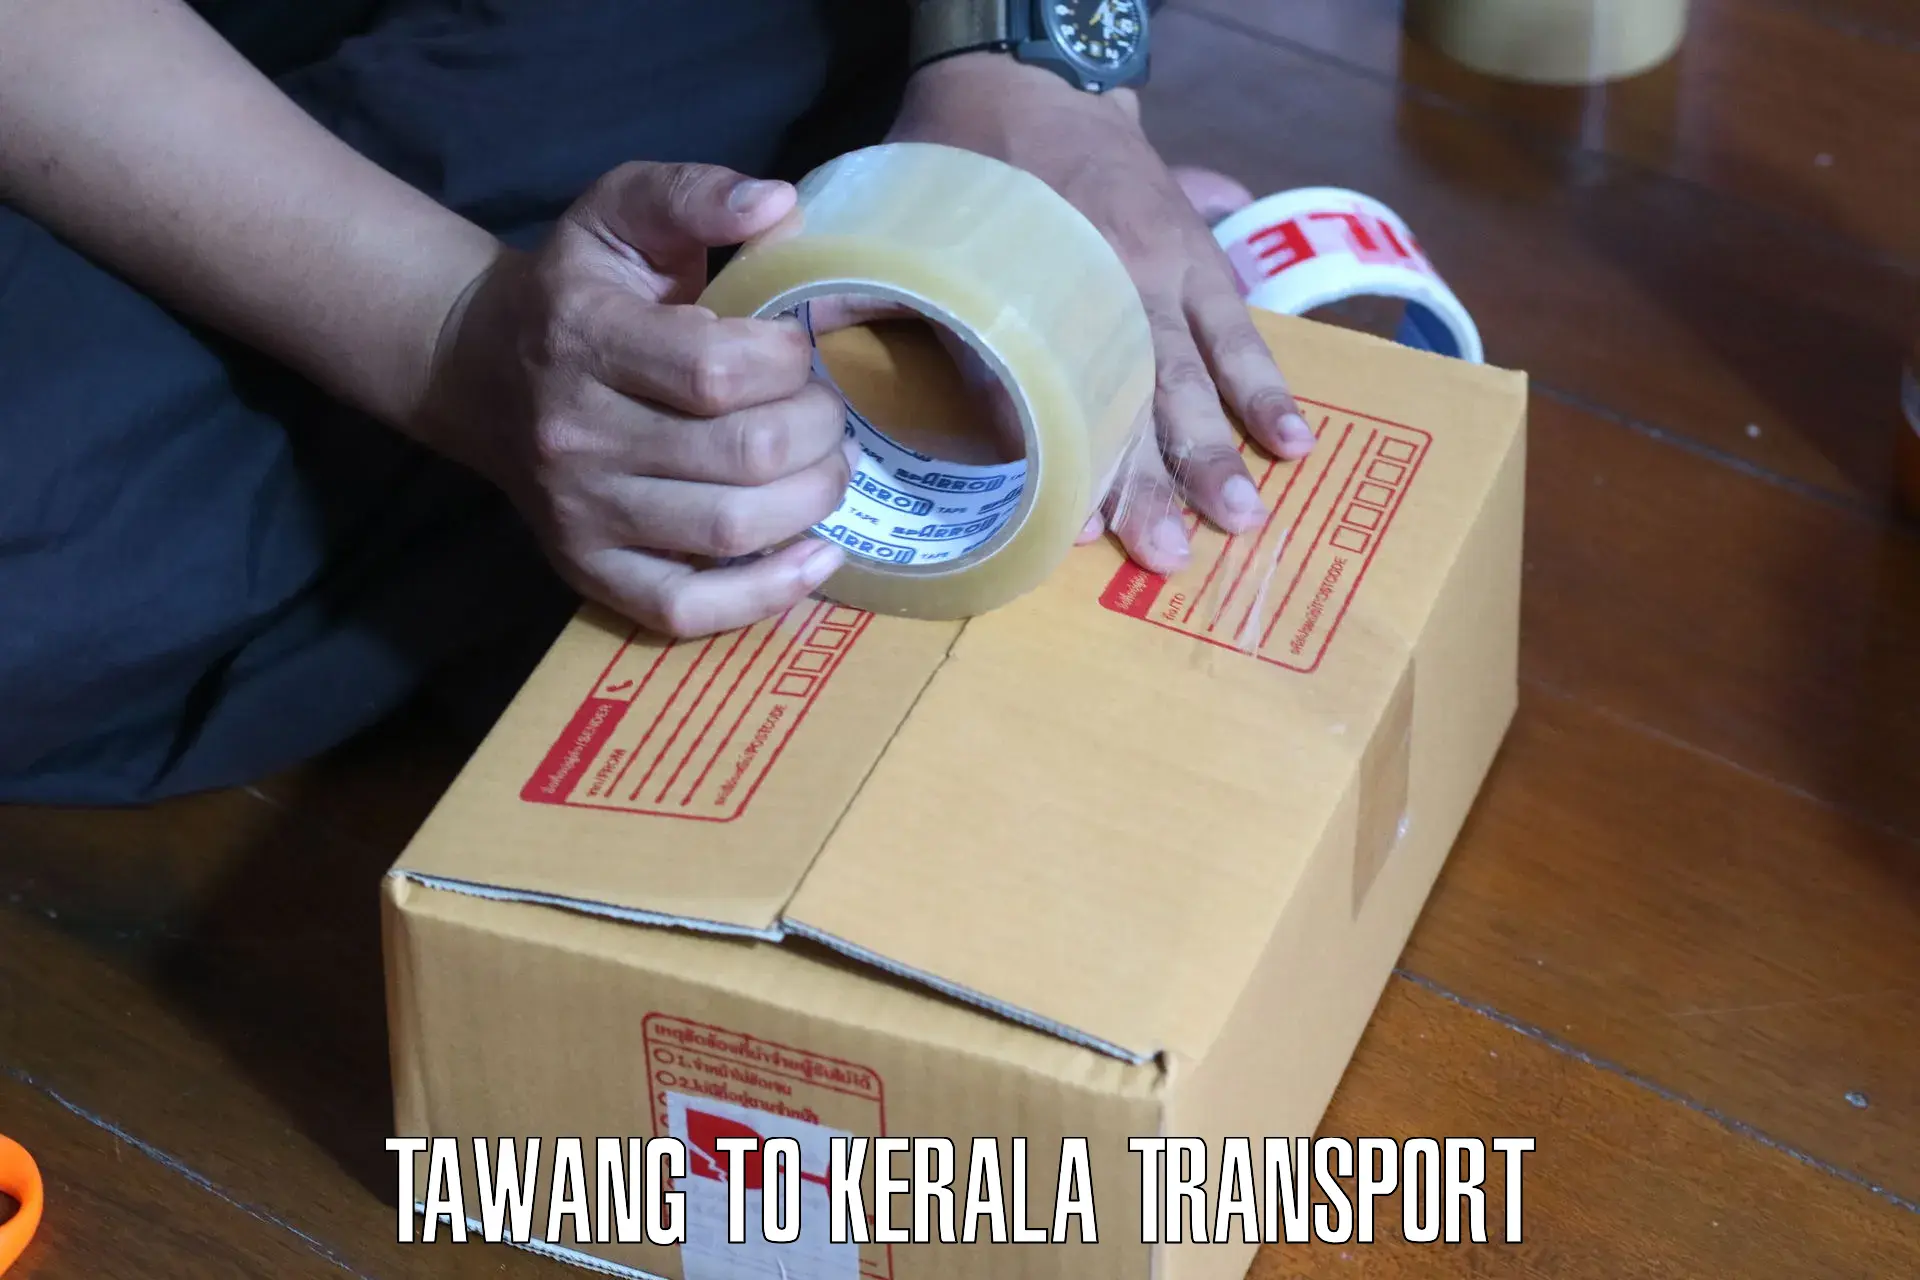 Nearest transport service in Tawang to Kerala